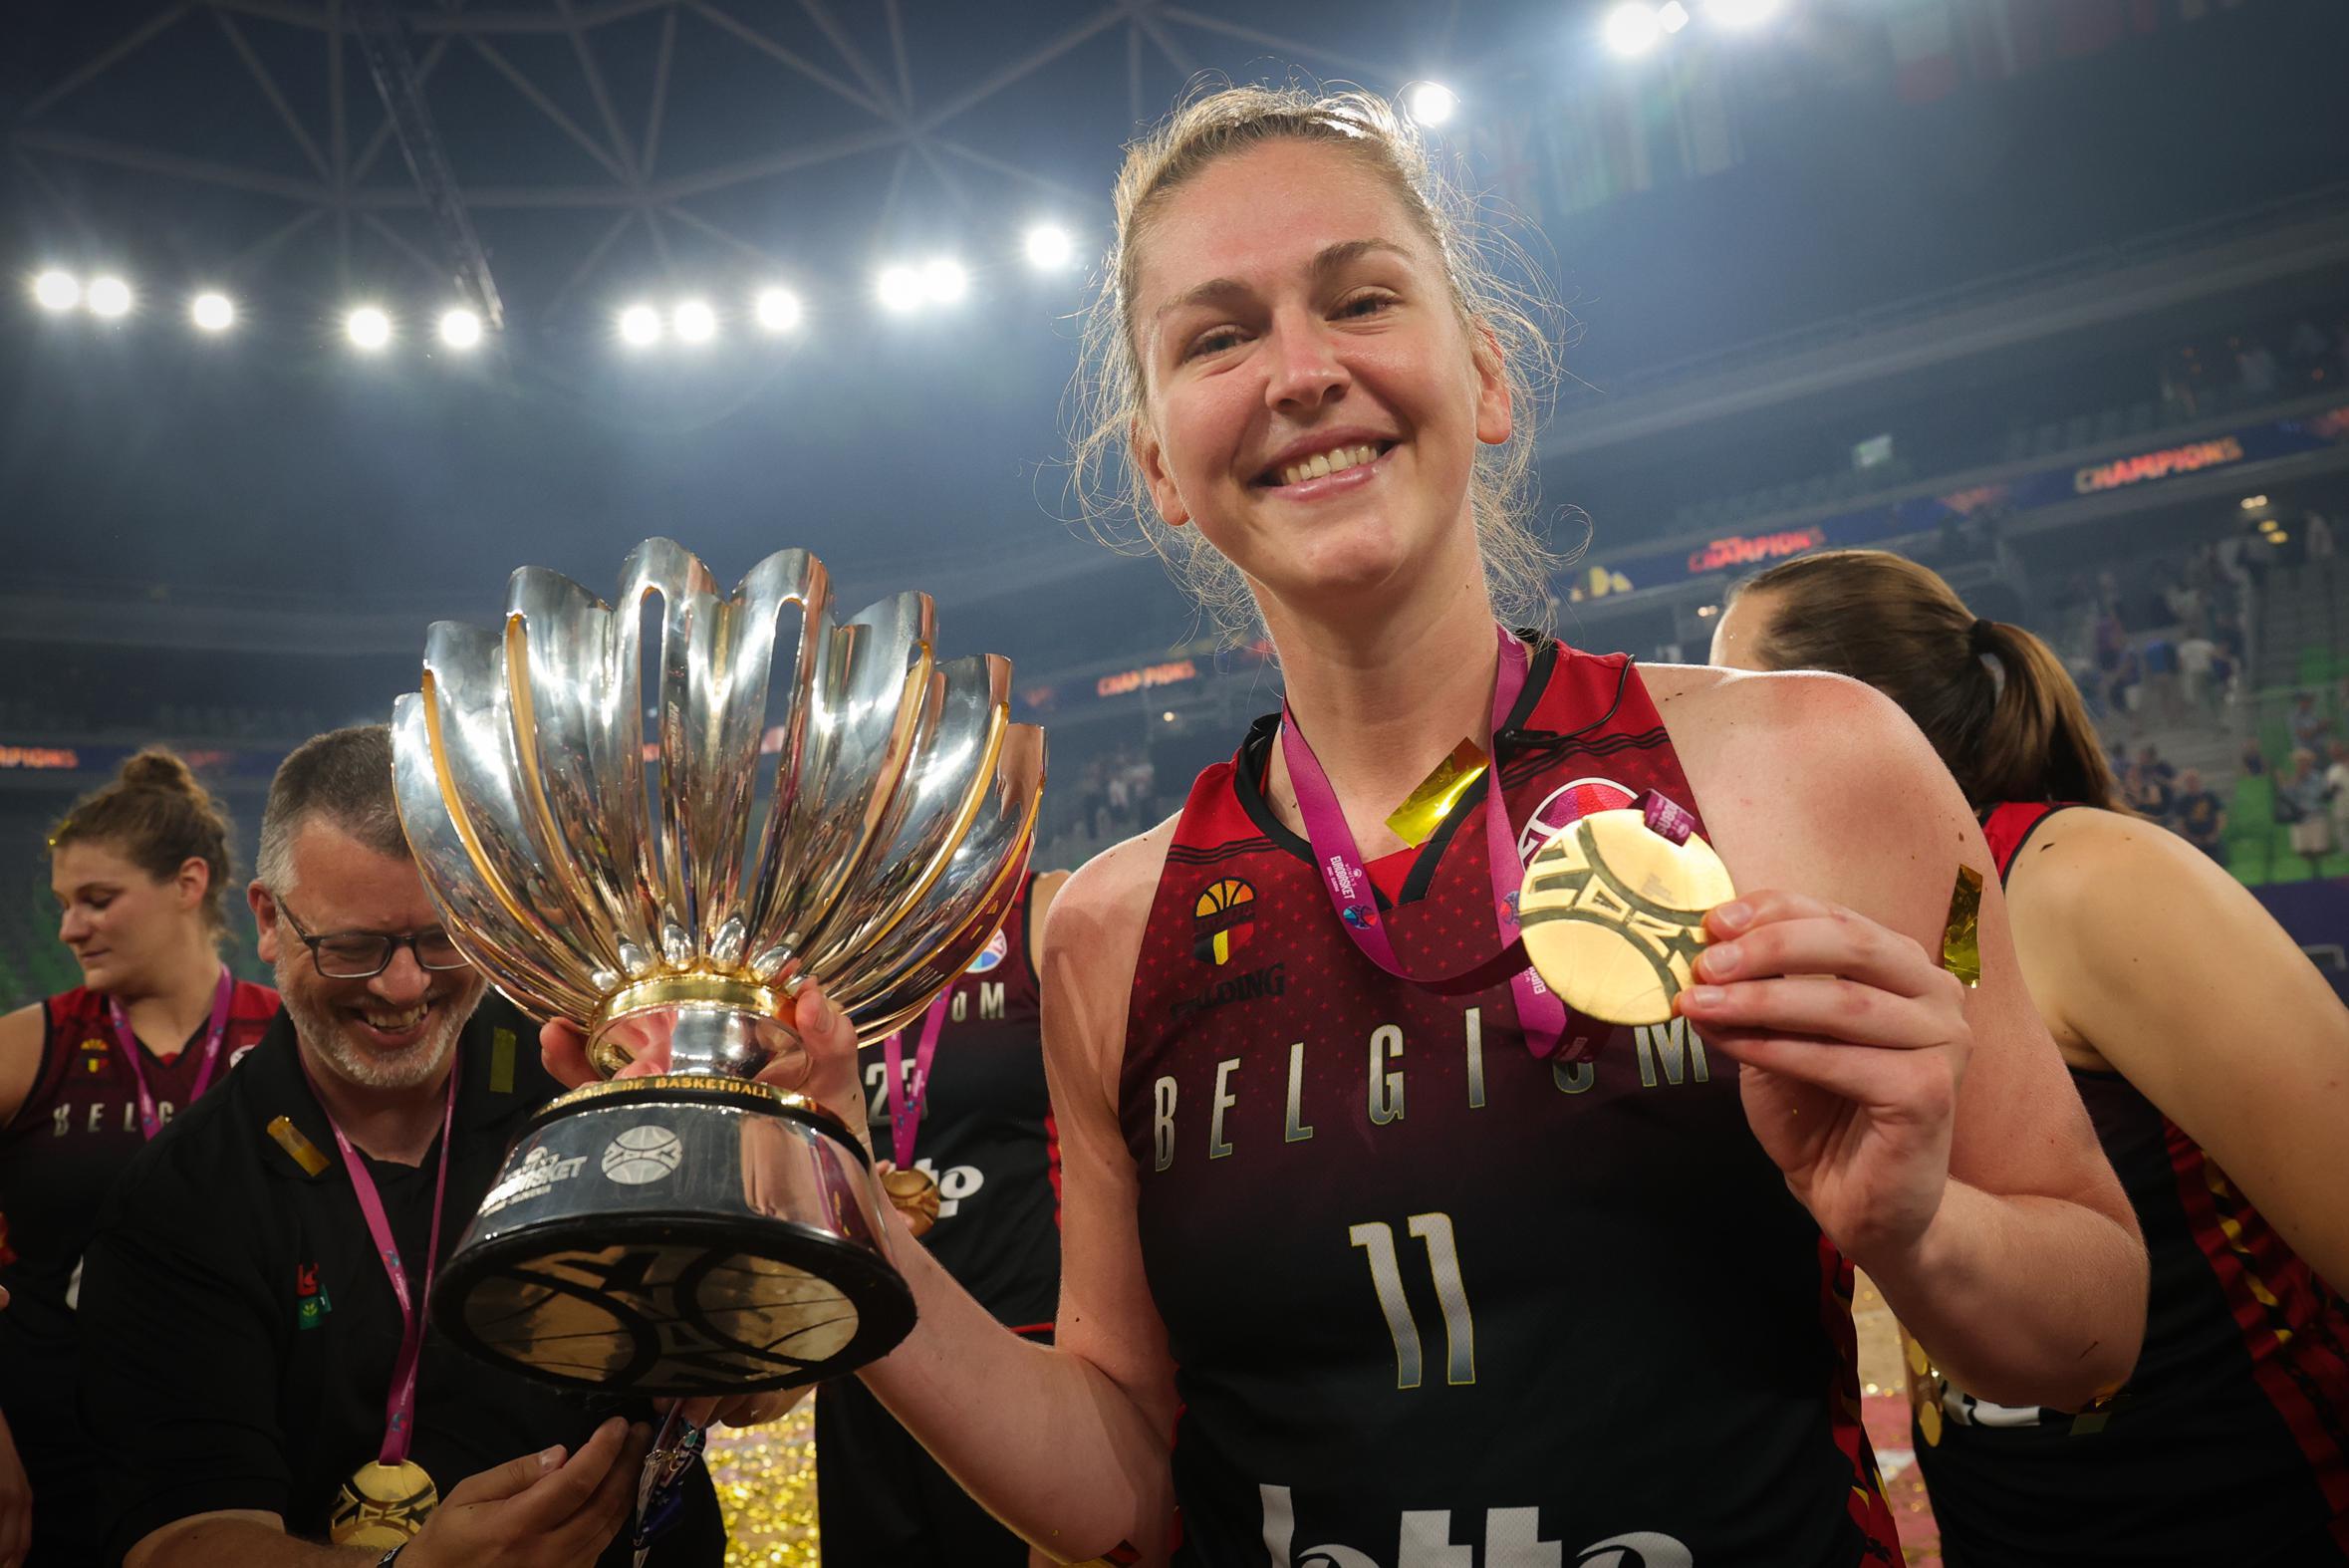 Belgian Cat én MVP Emma Meesseman glundert na Europese titel: “Ik blijf naar de score kijken om zeker te zijn”